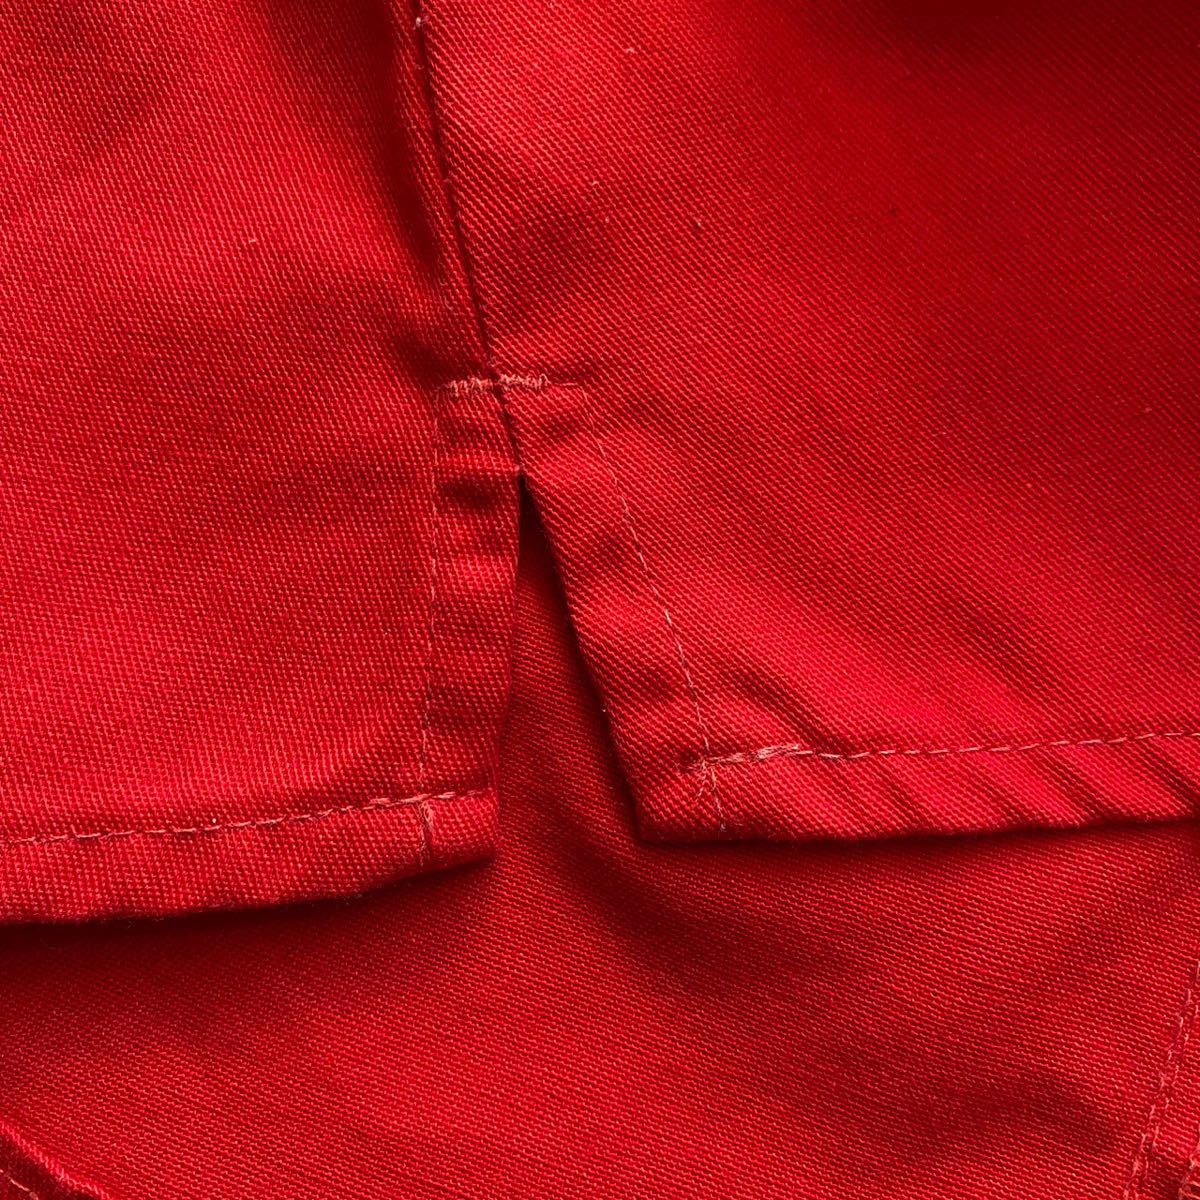  Harley Hurley мини-юбка 1 красный красный полиэстер хлопок 90s Vintage Old Surf серфер America USA б/у одежда низ 